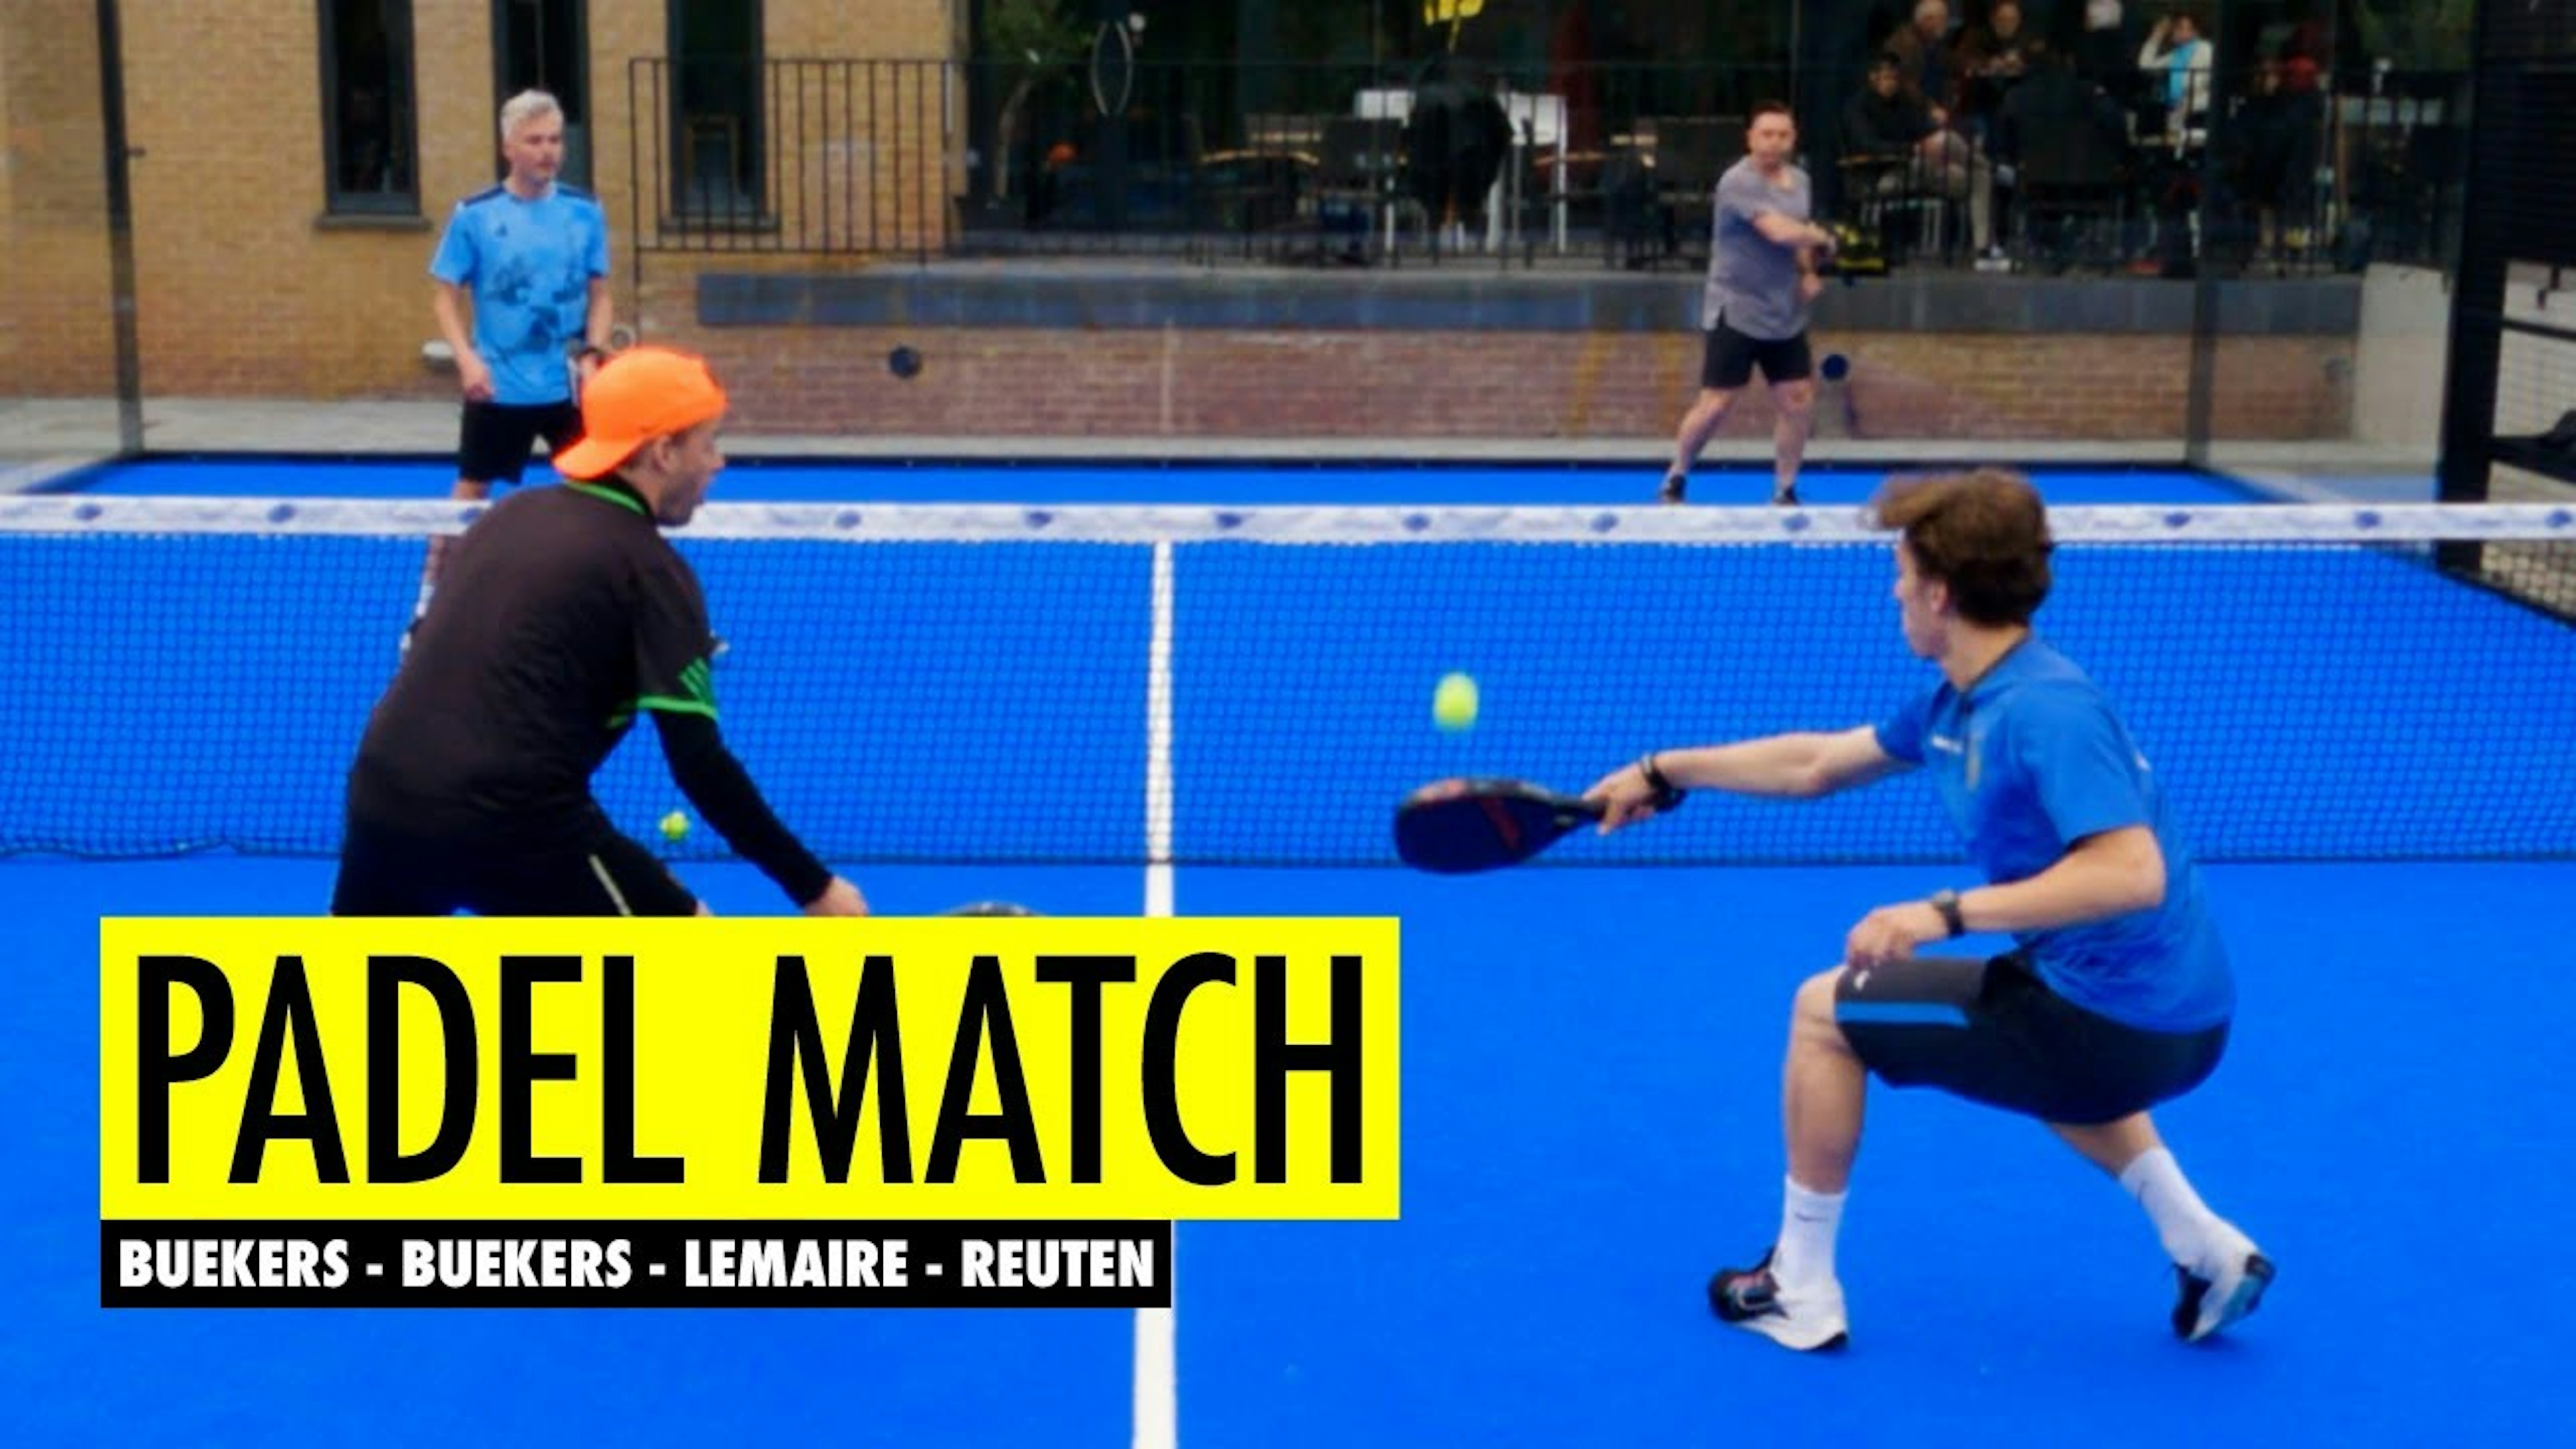 Padel Match: Buekers - Buekers - Lemaire - Reuten | Andy Lemaire